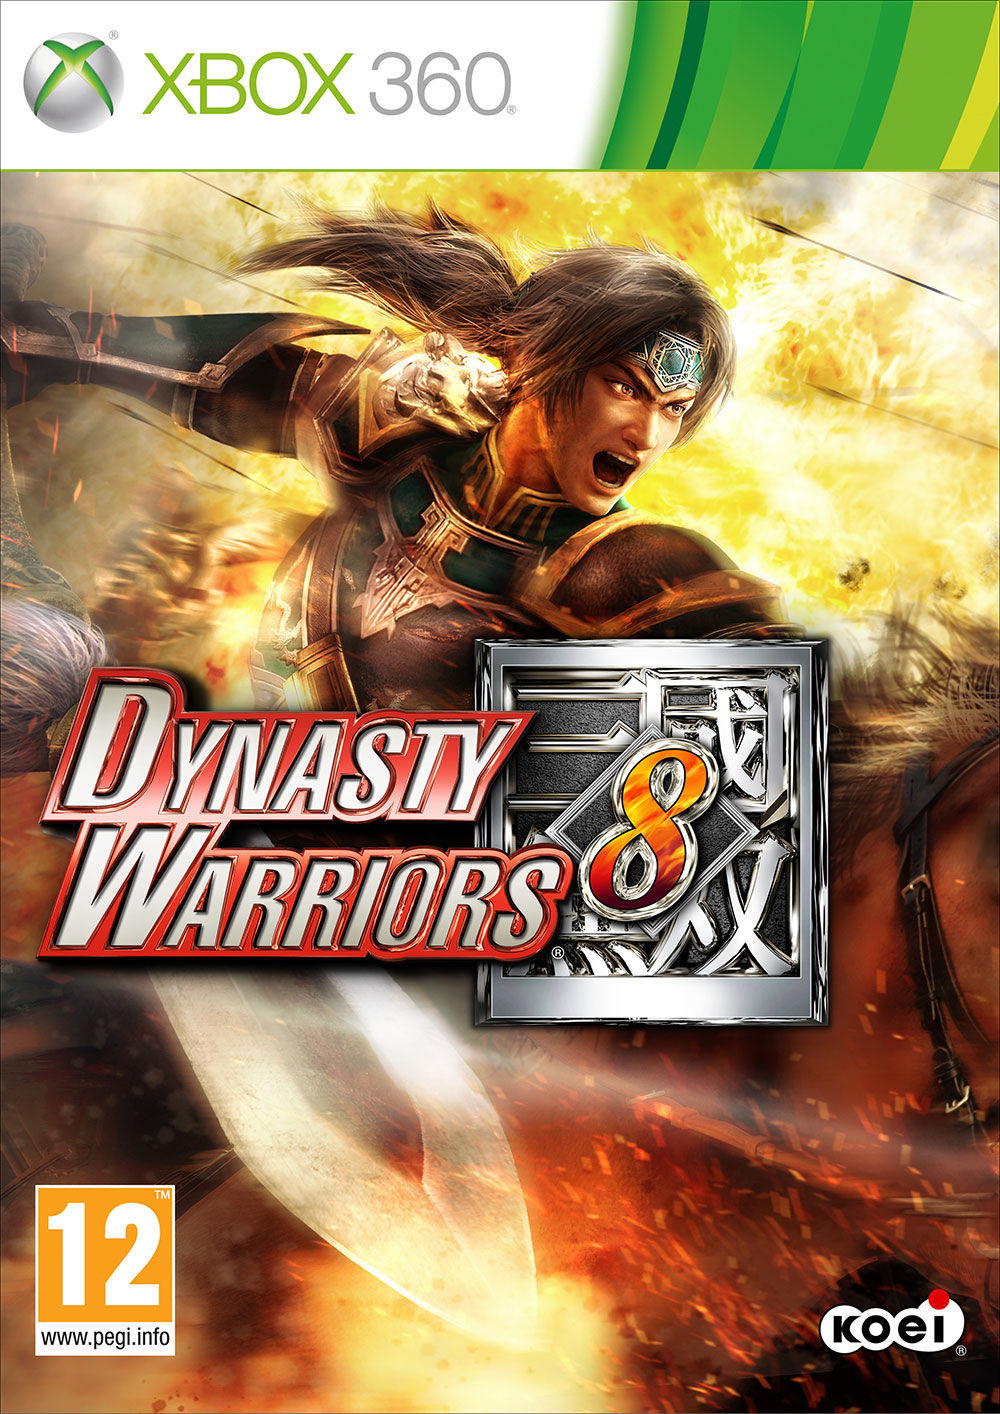 'Dynasty Warriors 8' retrasa su lanzamiento hasta el 19 de julio